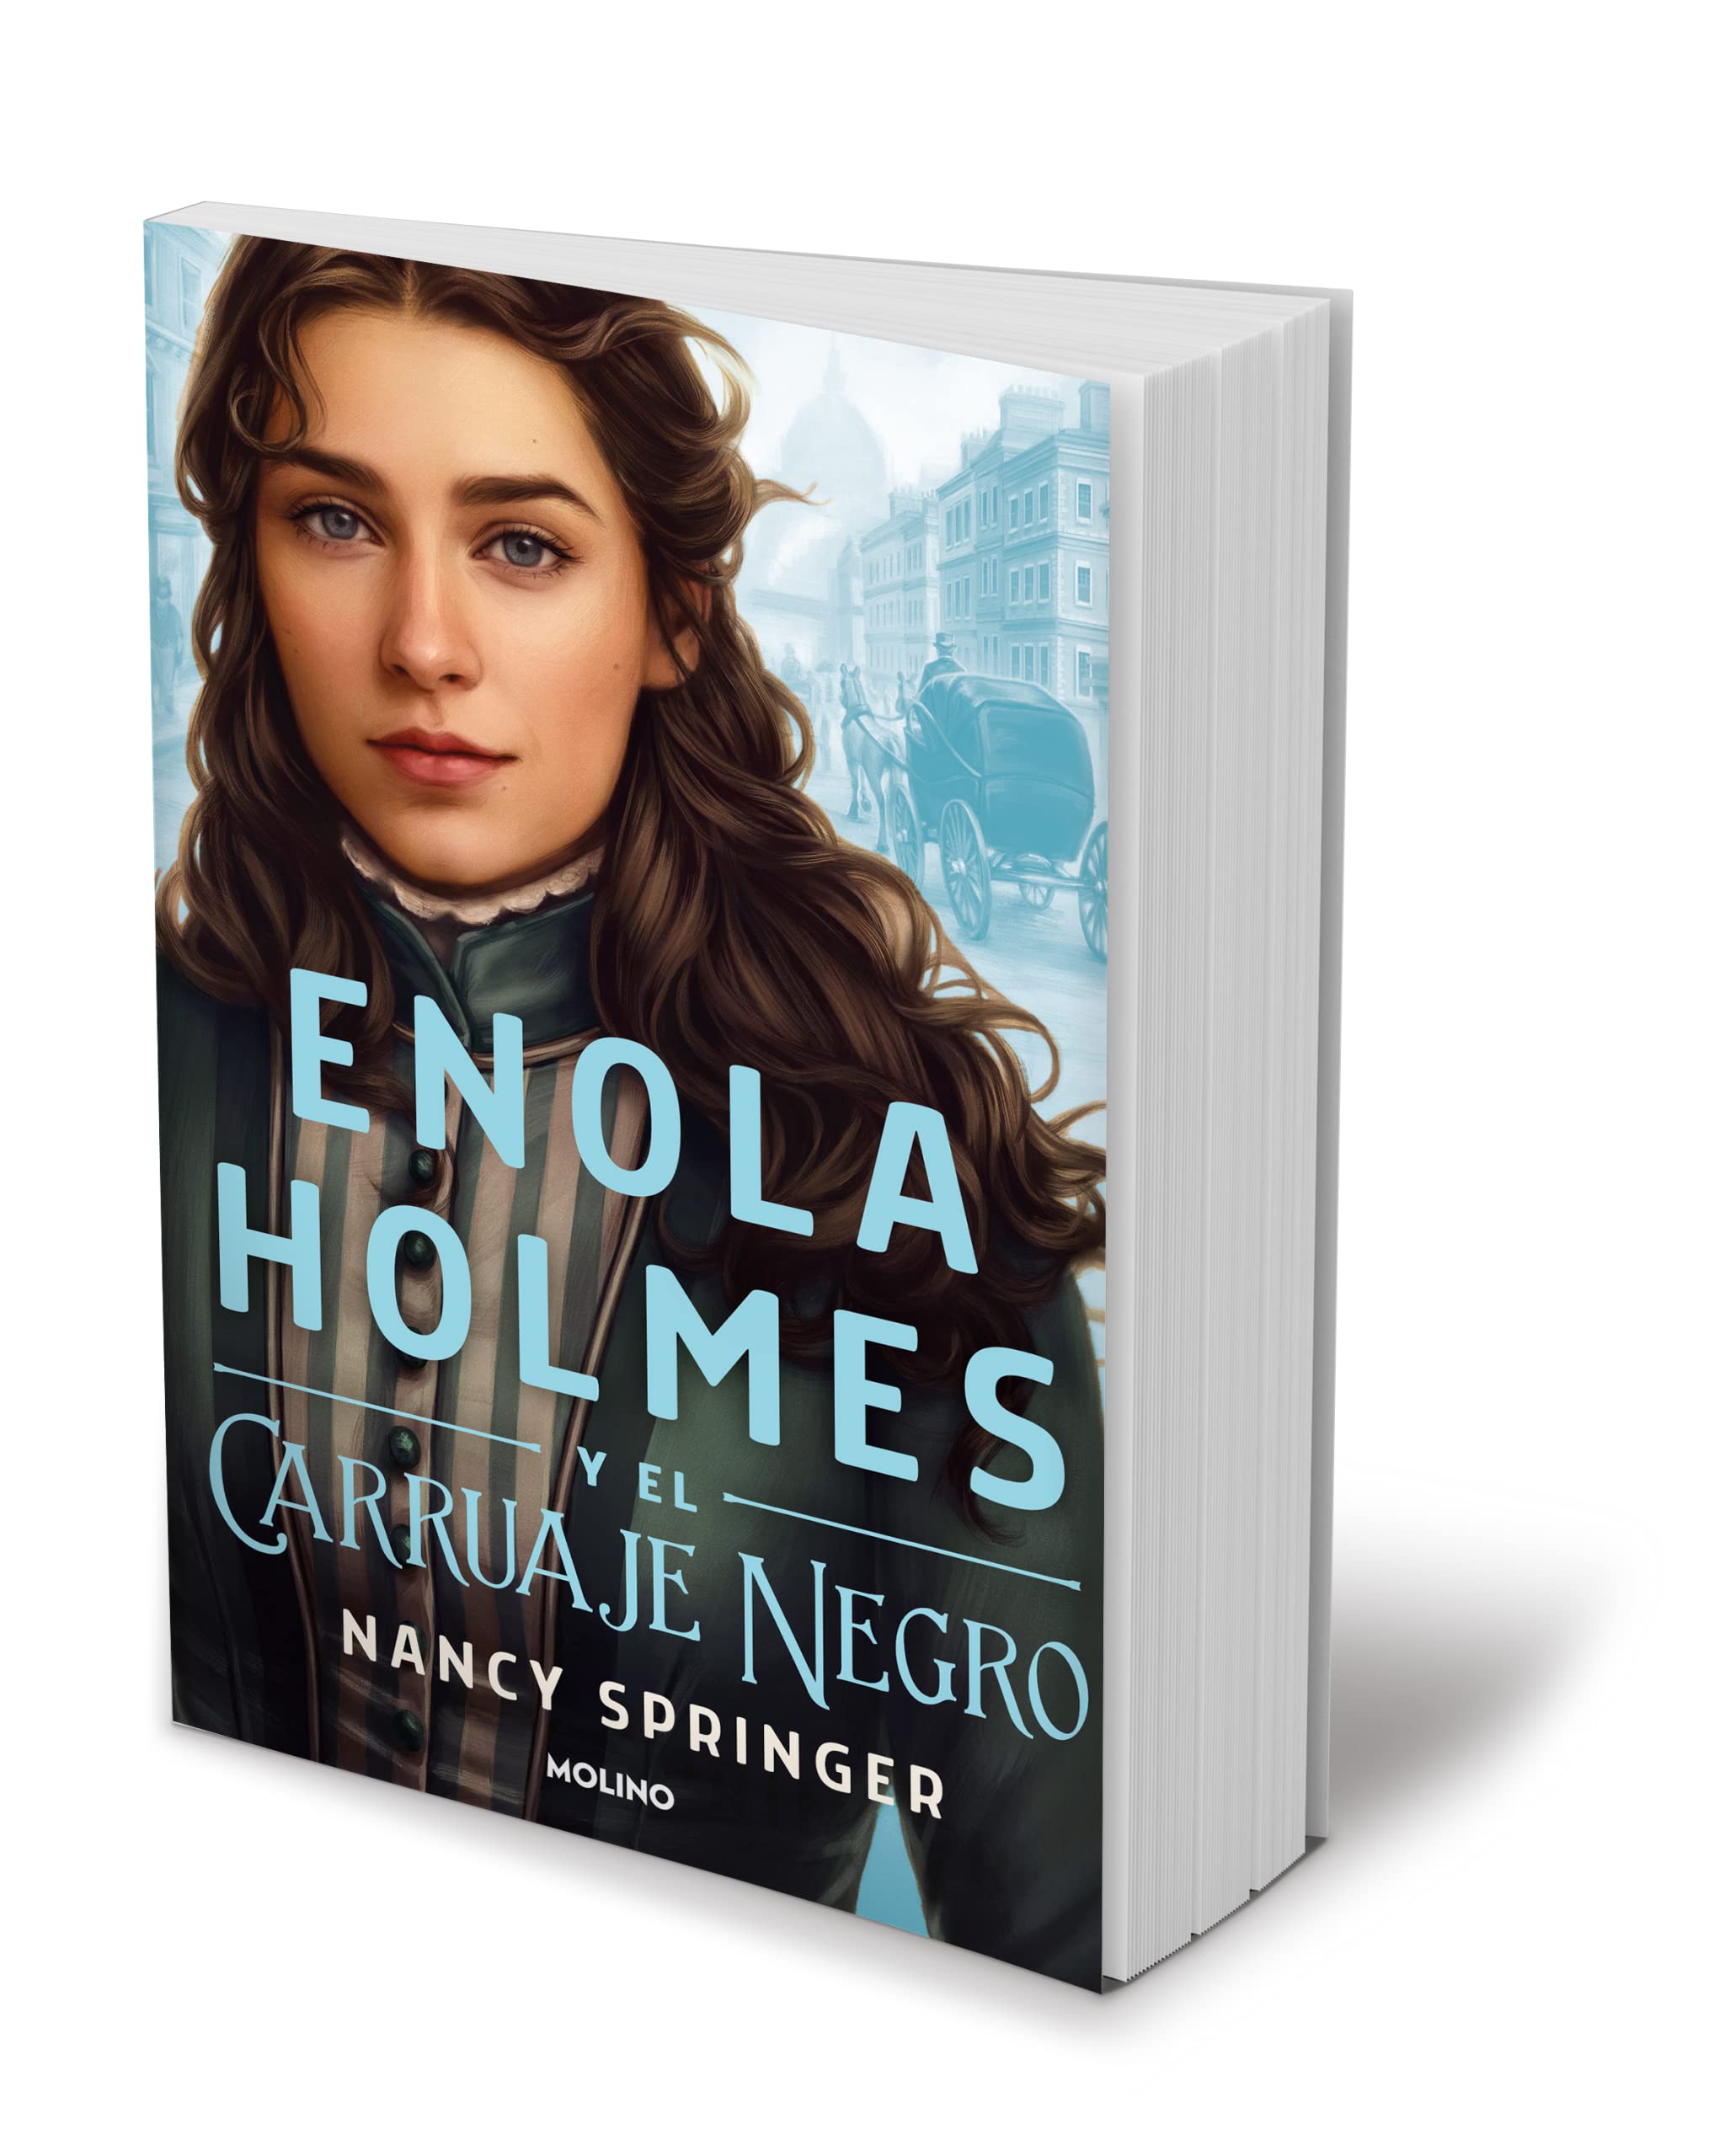 Libro: Enola Holmes y el carruaje negro por Nancy Springer